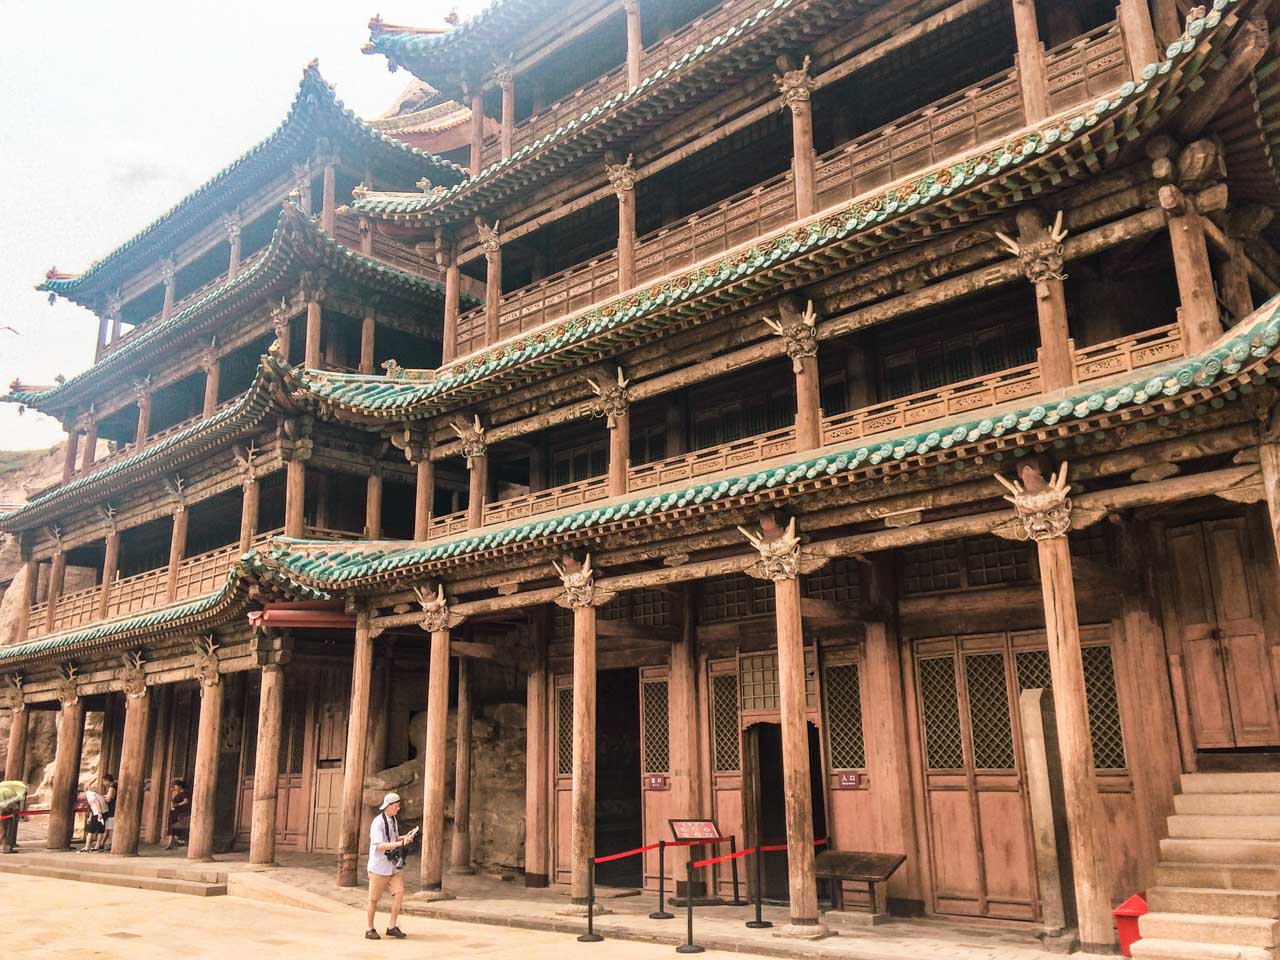 A pagoda at the Yungang Grottoes in Datong, Shanxi province